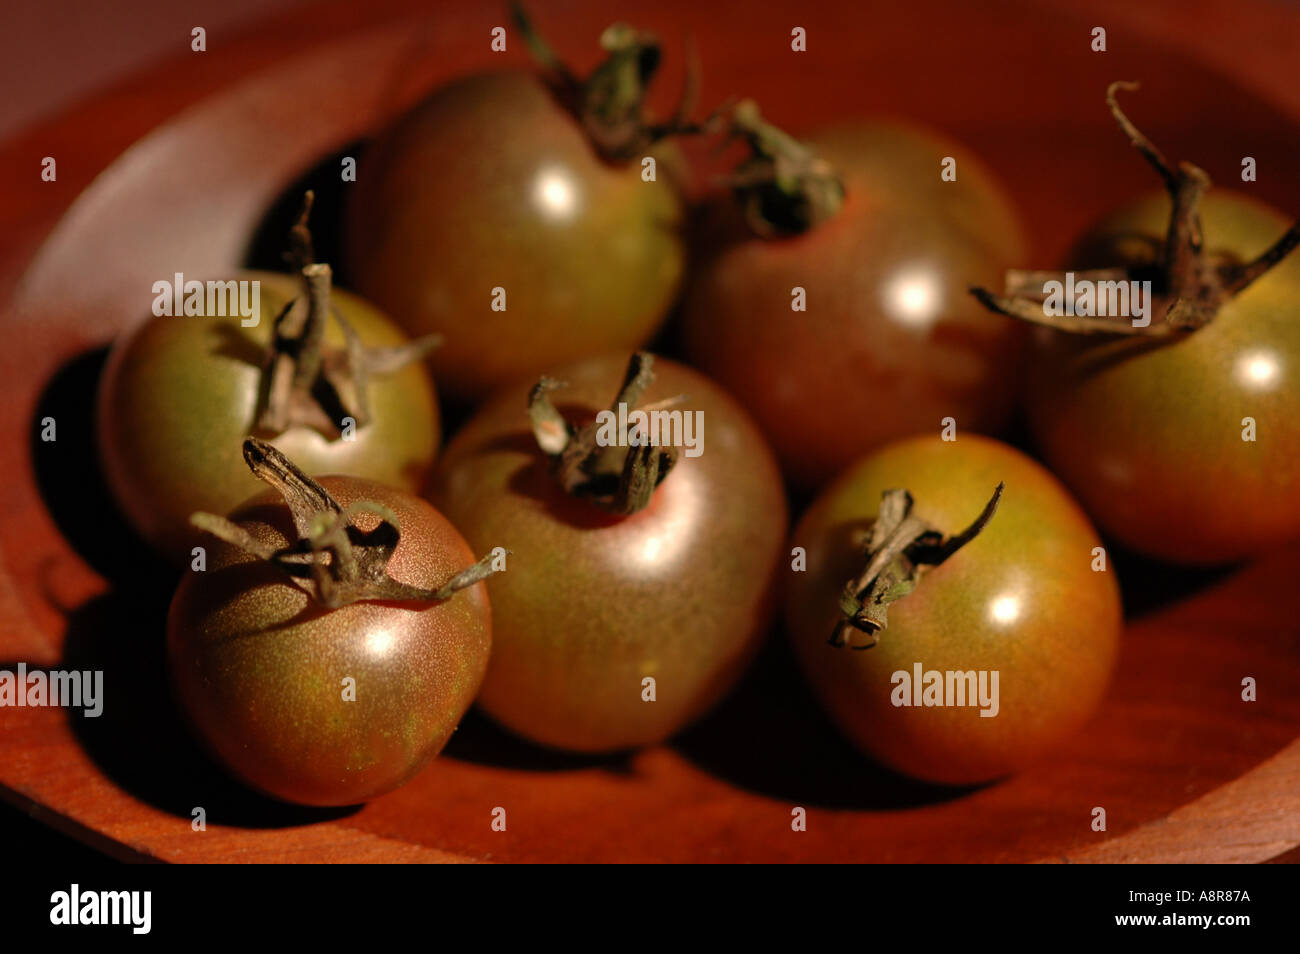 Les tomates cerise dans un bol en bois de nombreuses images Banque D'Images